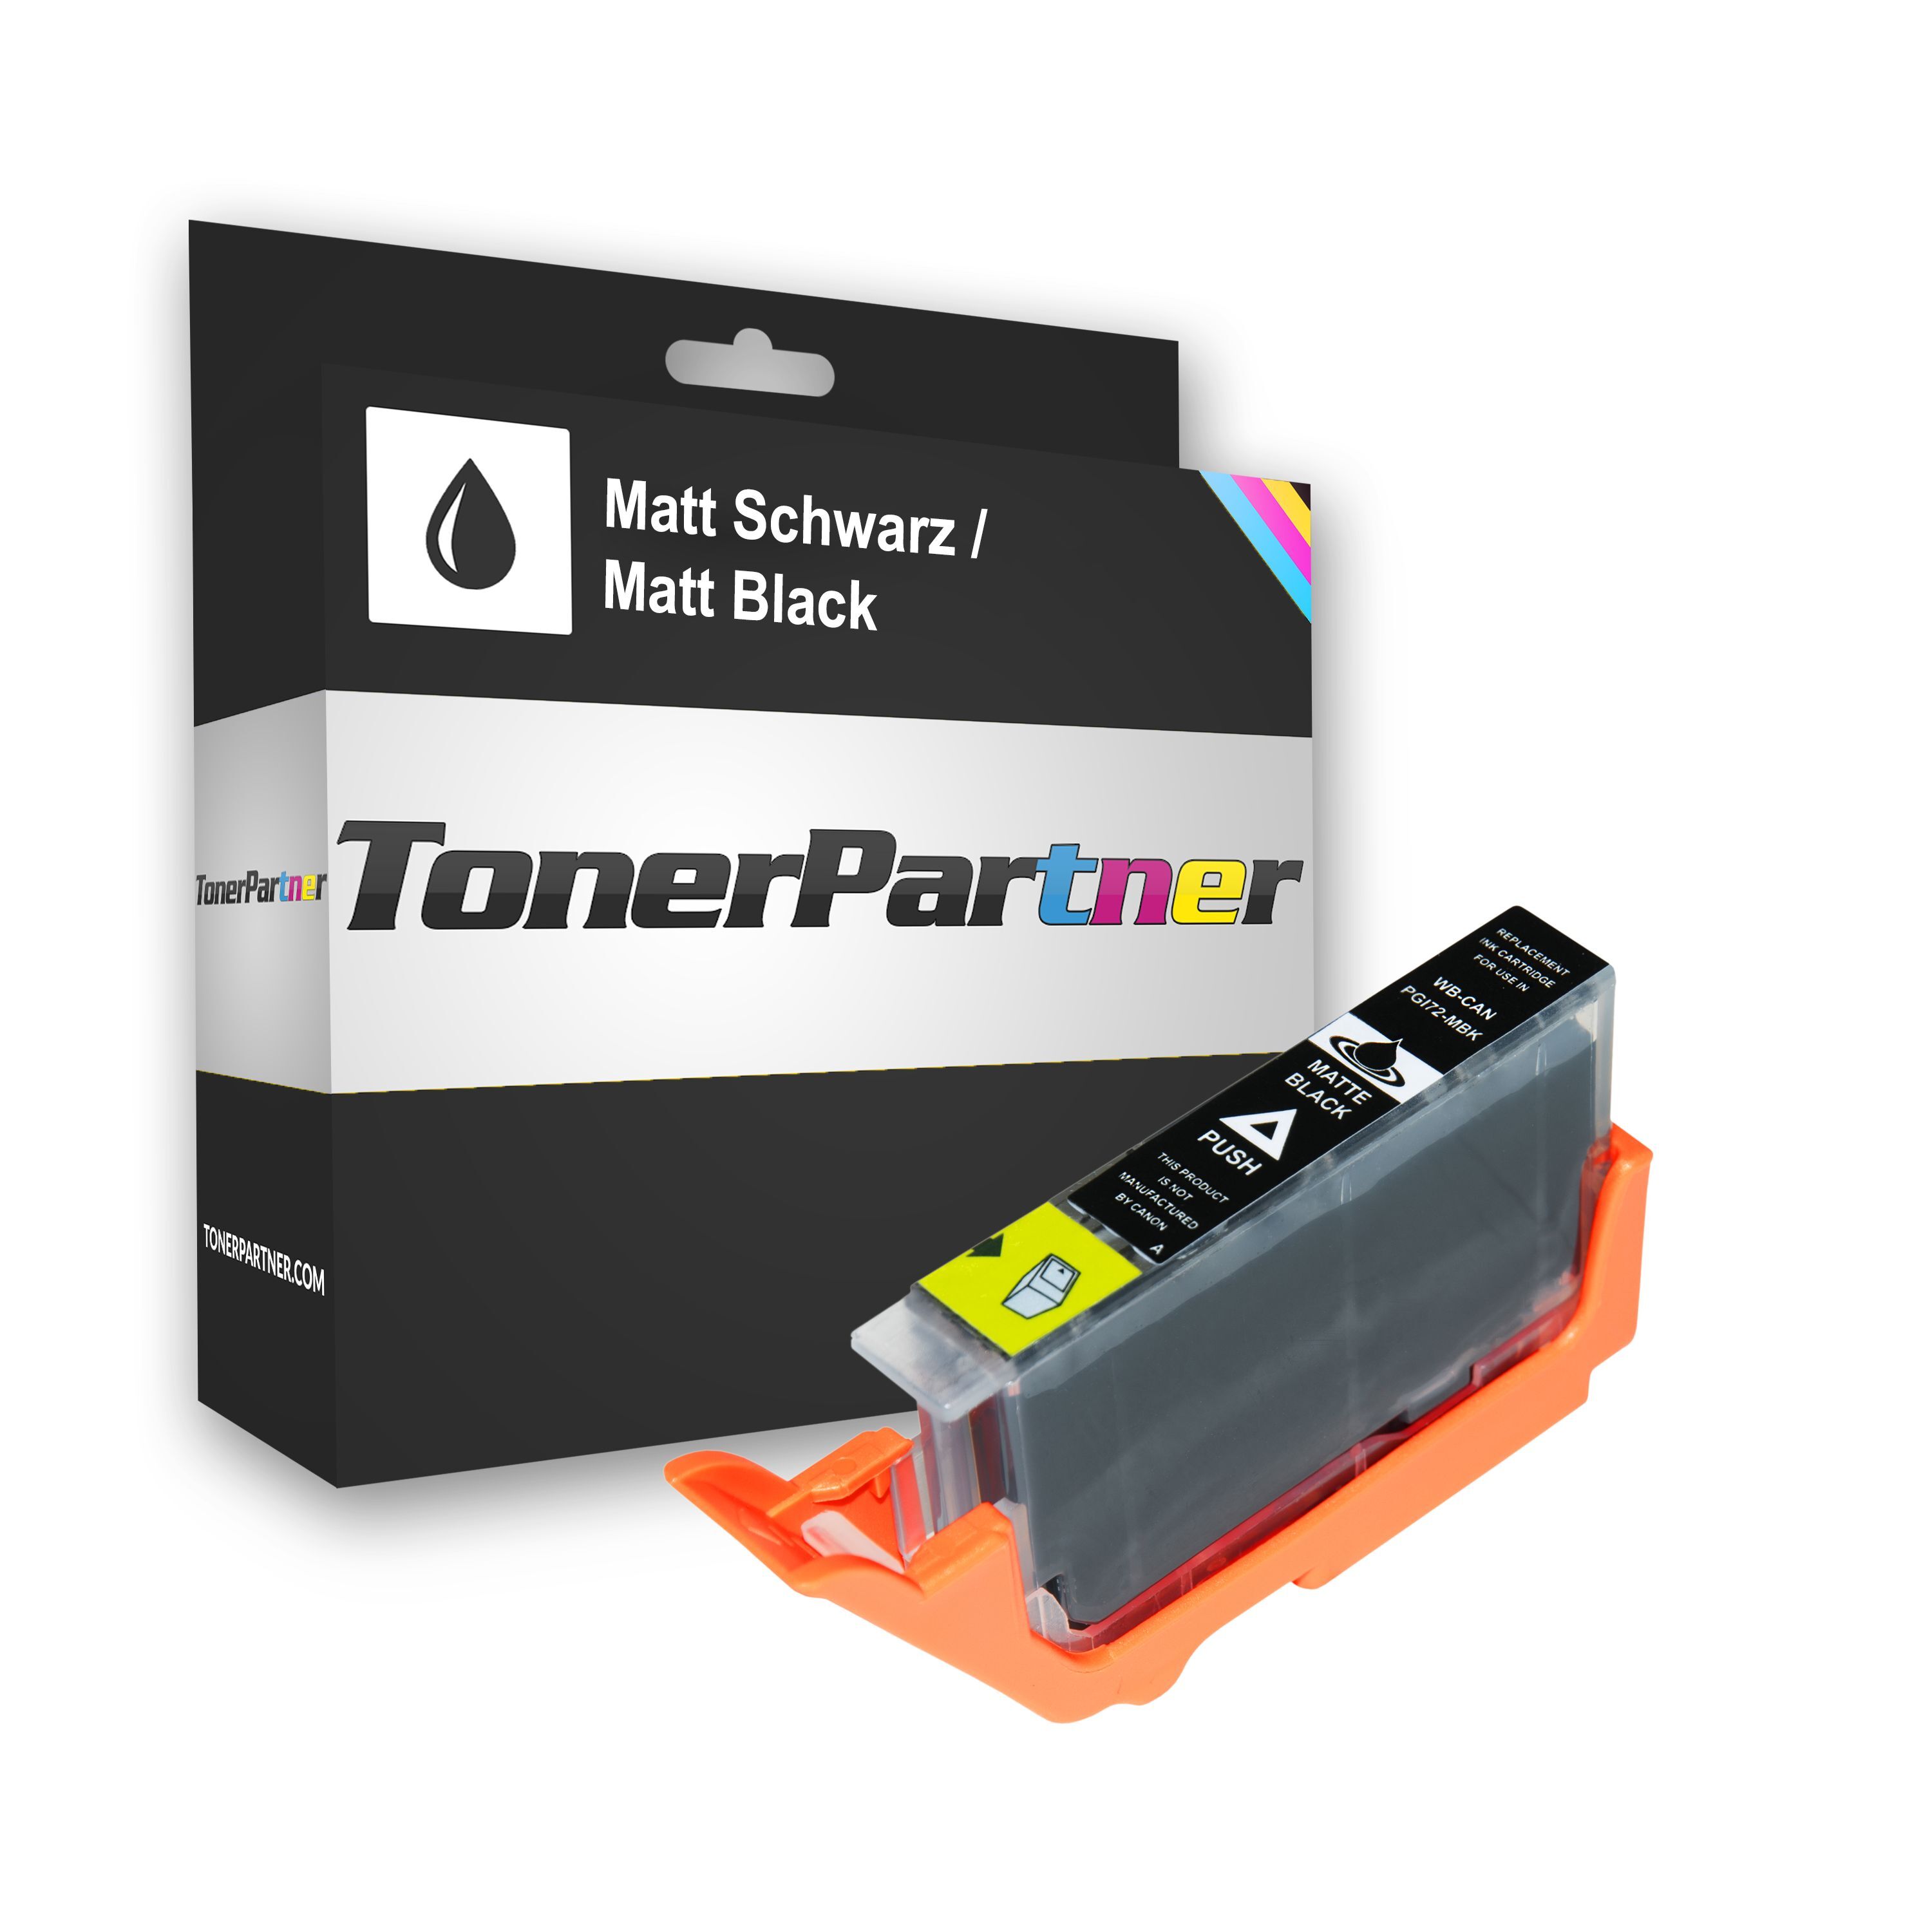 TonerPartner Kompatibel zu Canon Pixma Pro 10 S Tintenpatrone (PGI-72 MBK / 6402 B 001) schwarz, 1.100 Seiten, 0,53 Rp pro Seite, Inhalt: 13 ml von TonerPartner